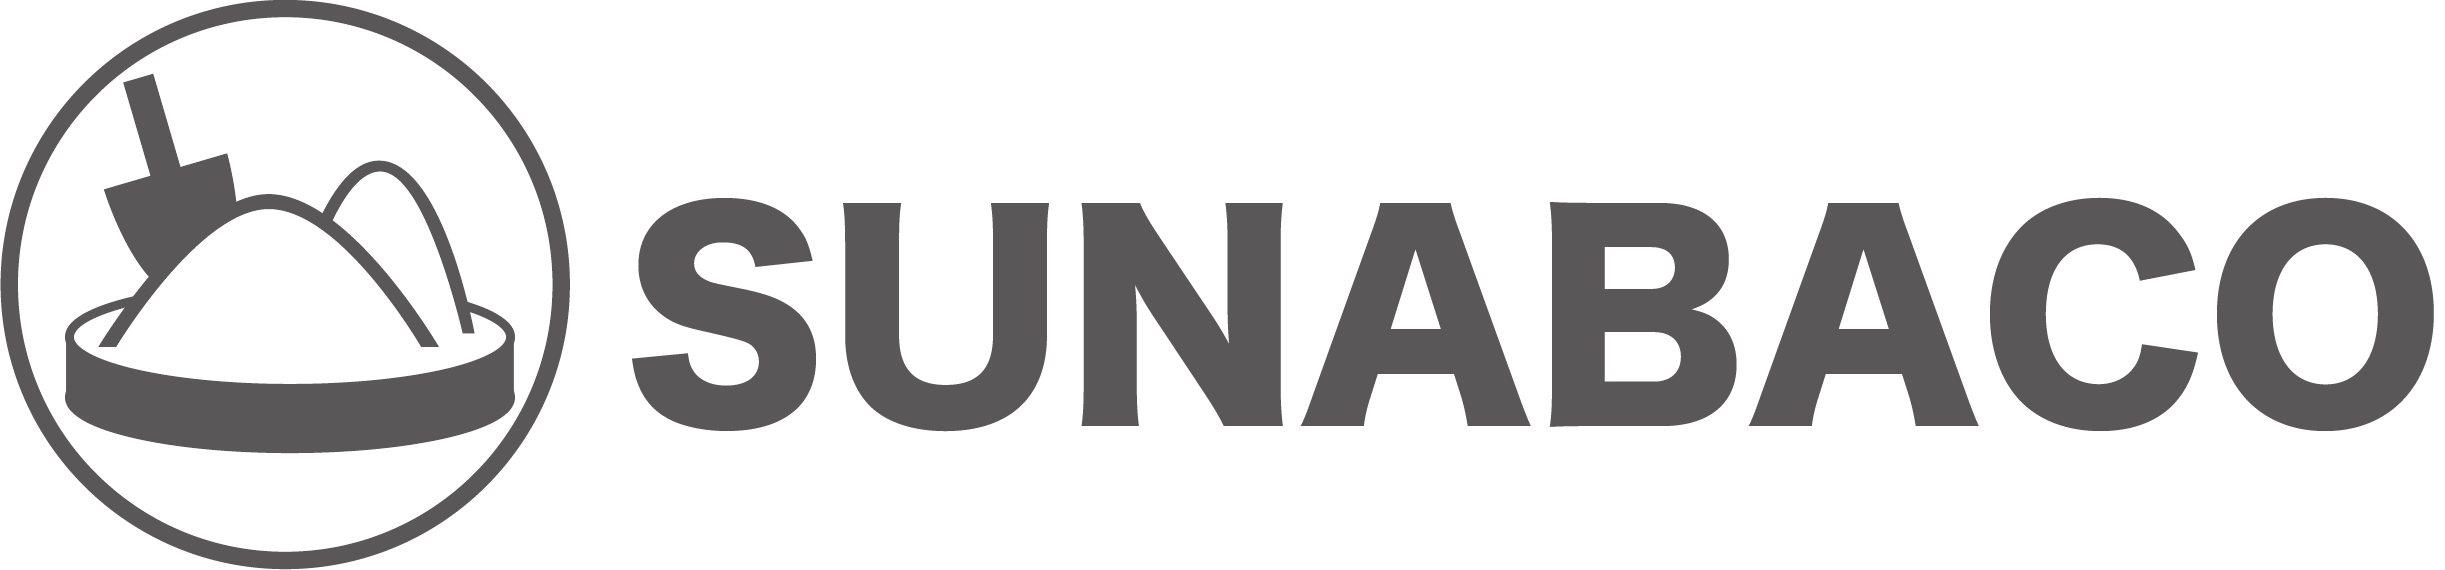 SUNABACOのロゴ